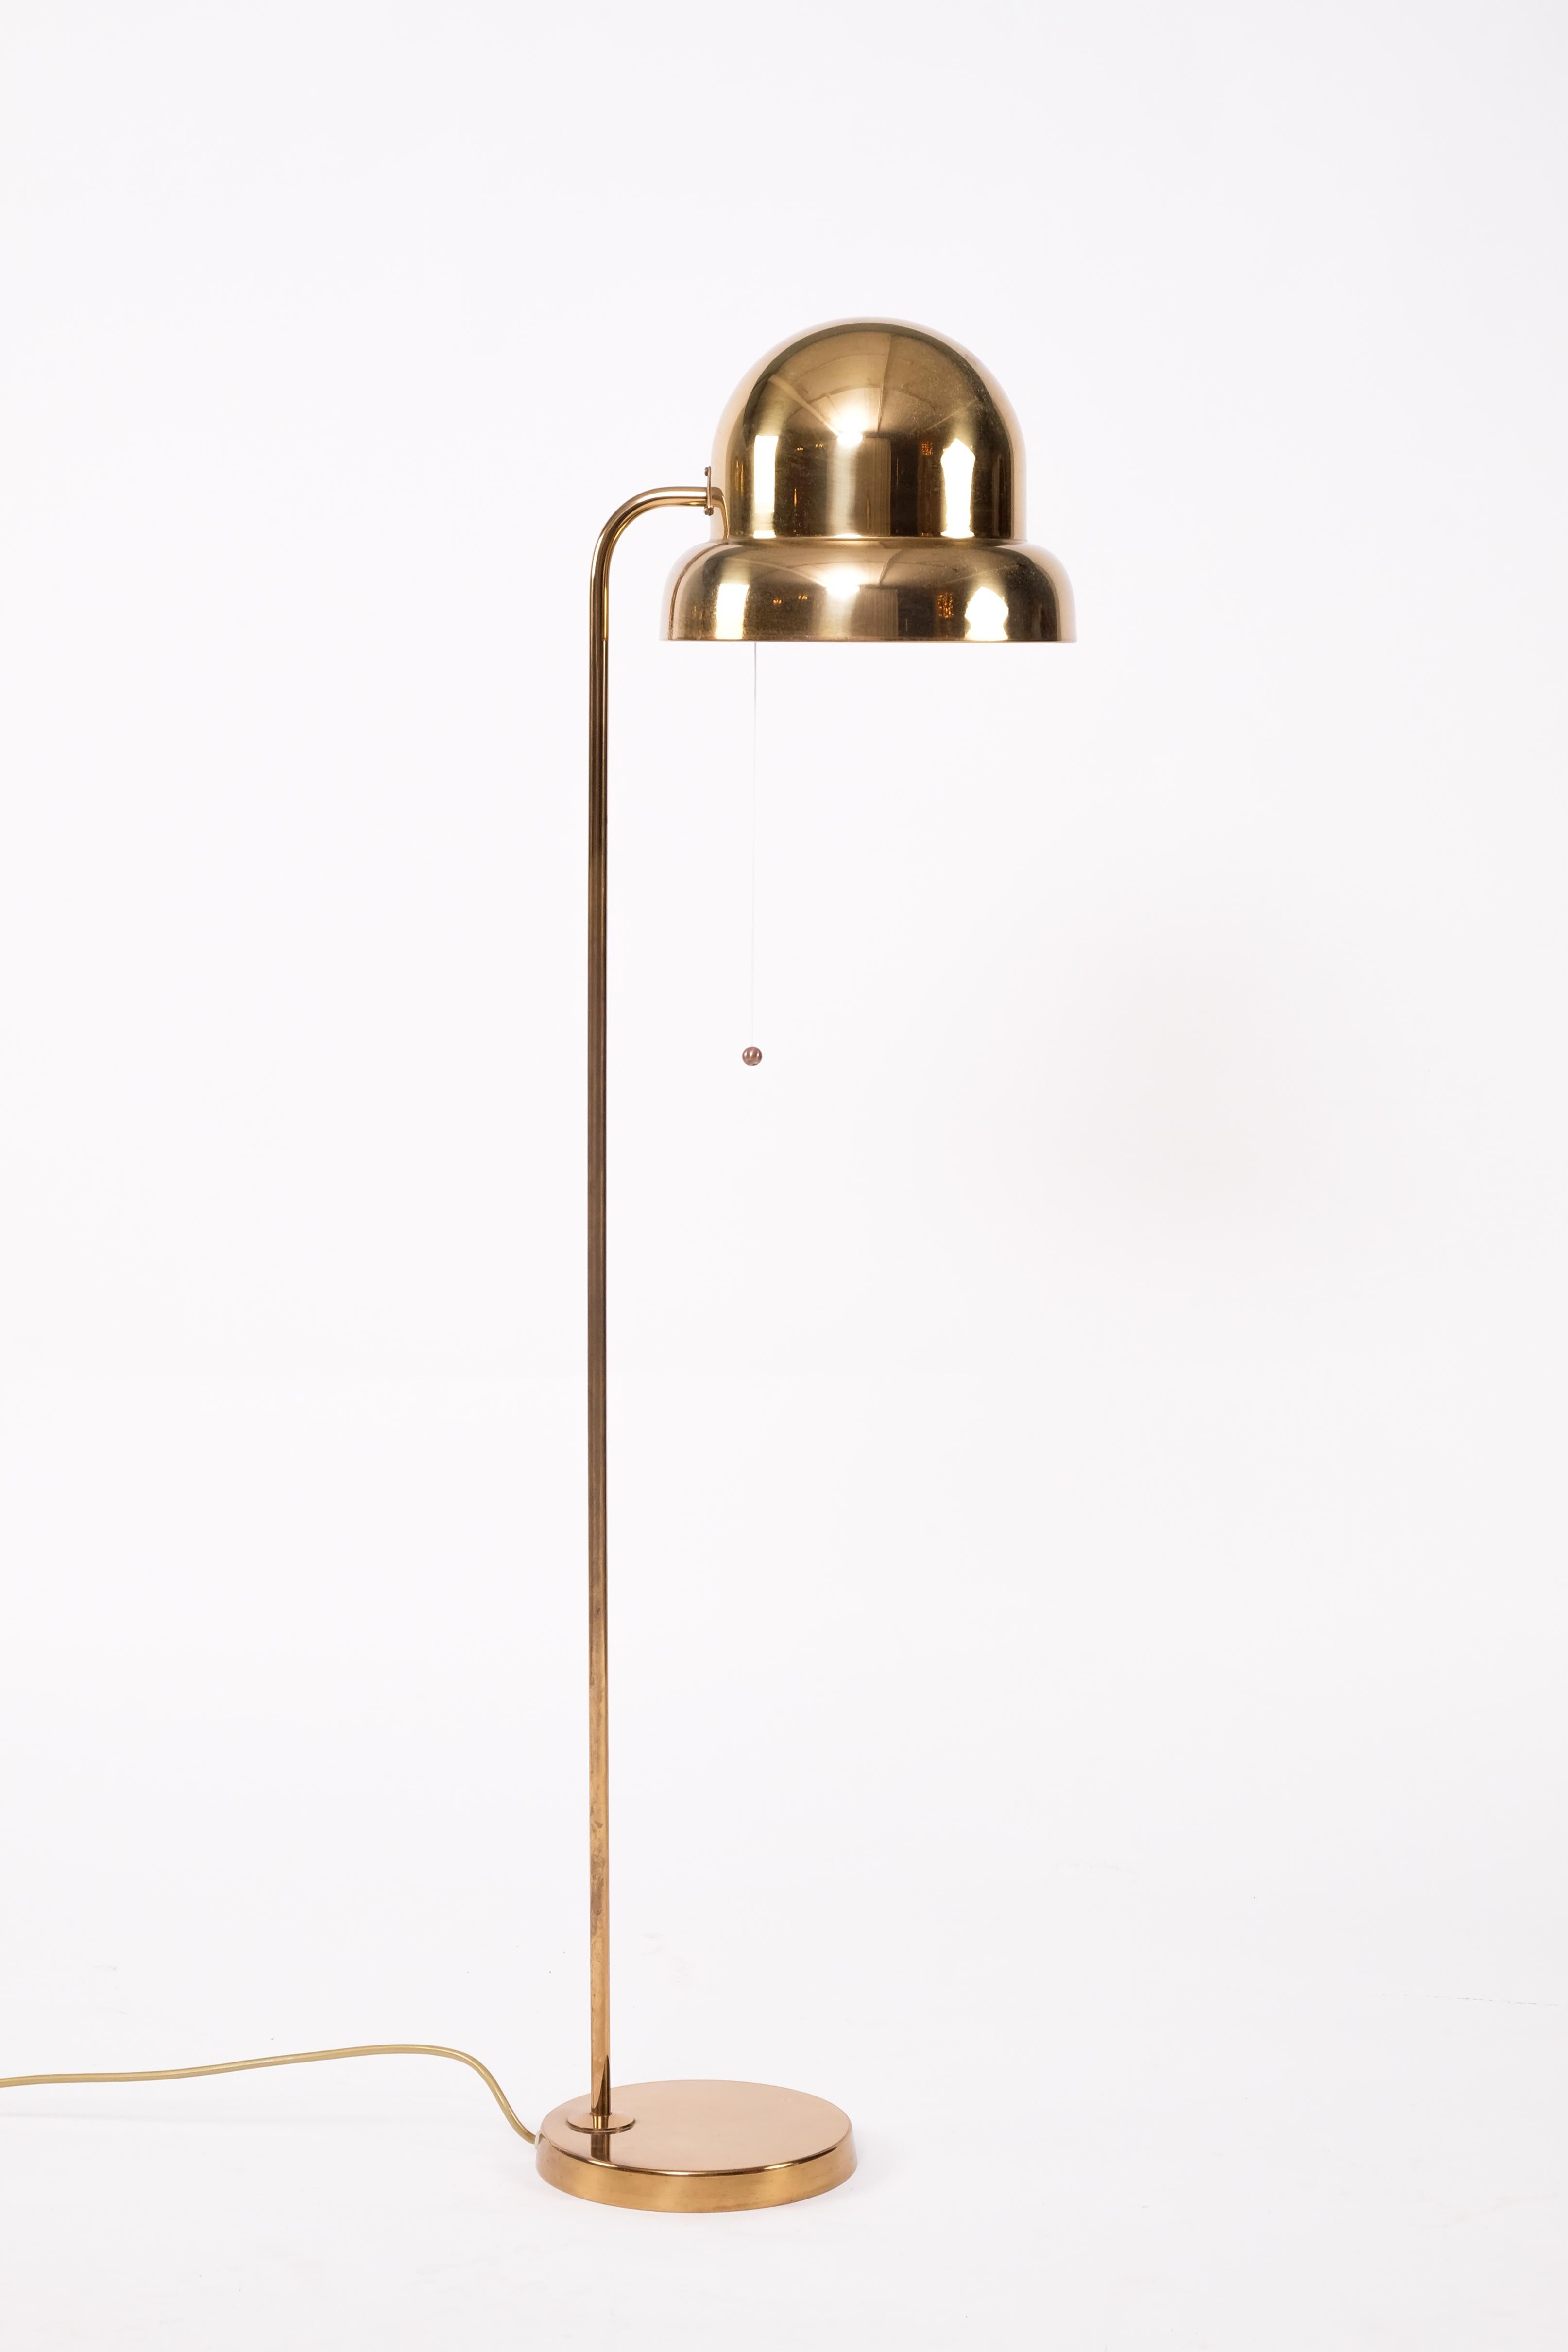 Brass Floor Lamp, Model G-090, Bergboms, Sweden, 1960s For Sale